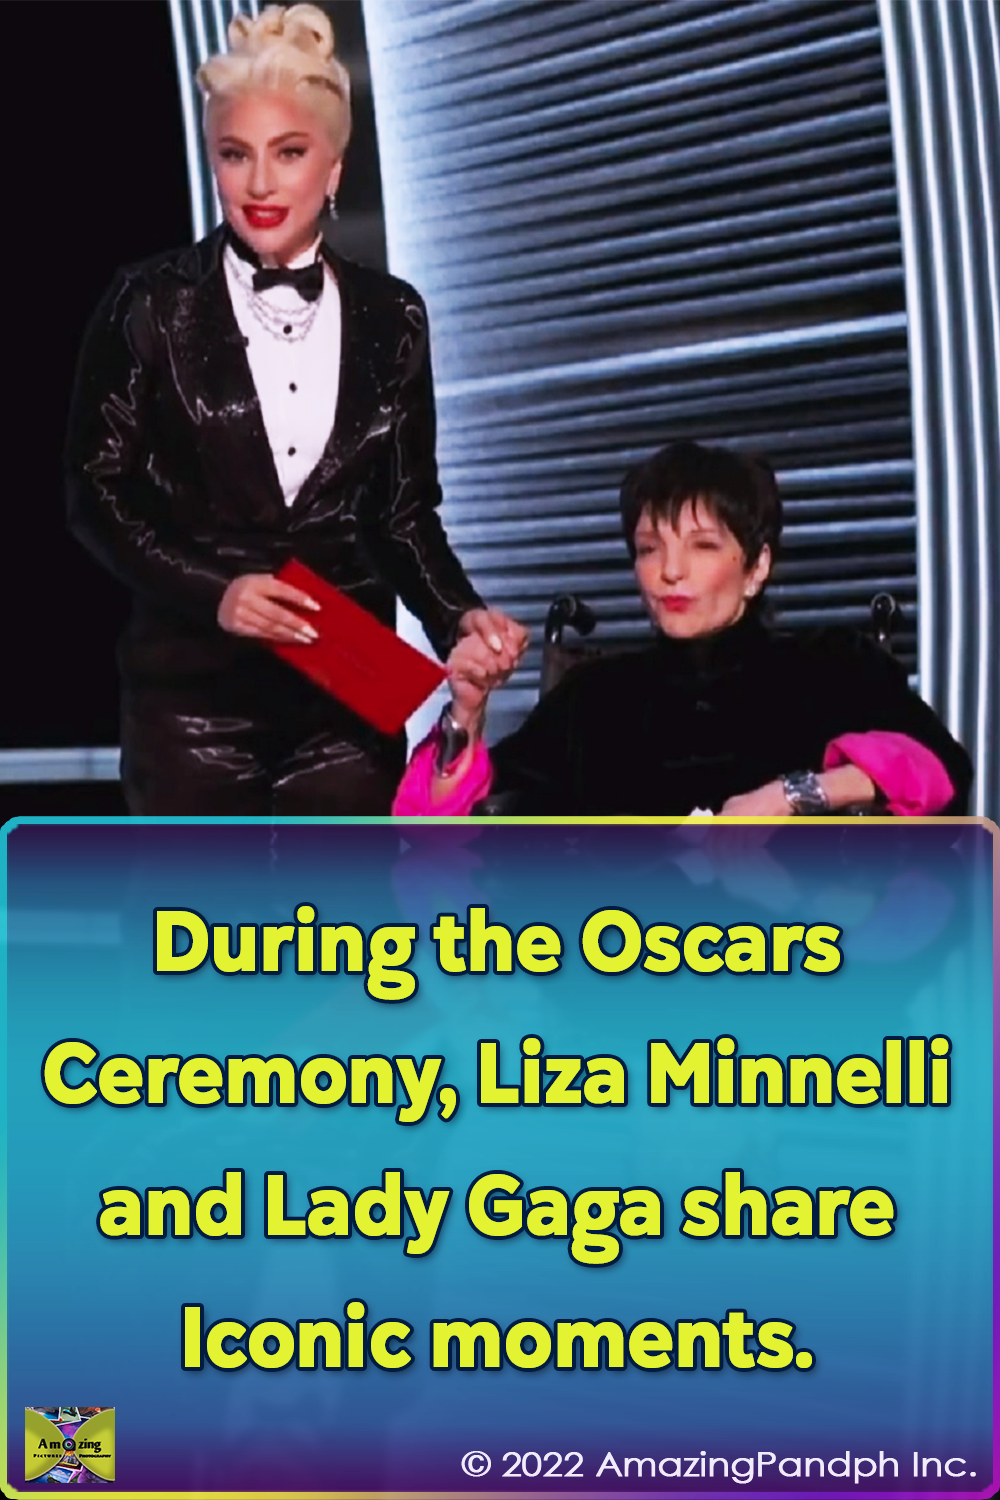 Lady Gaga, Liza Minneli, Will Smith, iconic, famous, Oscar, Ceremony,